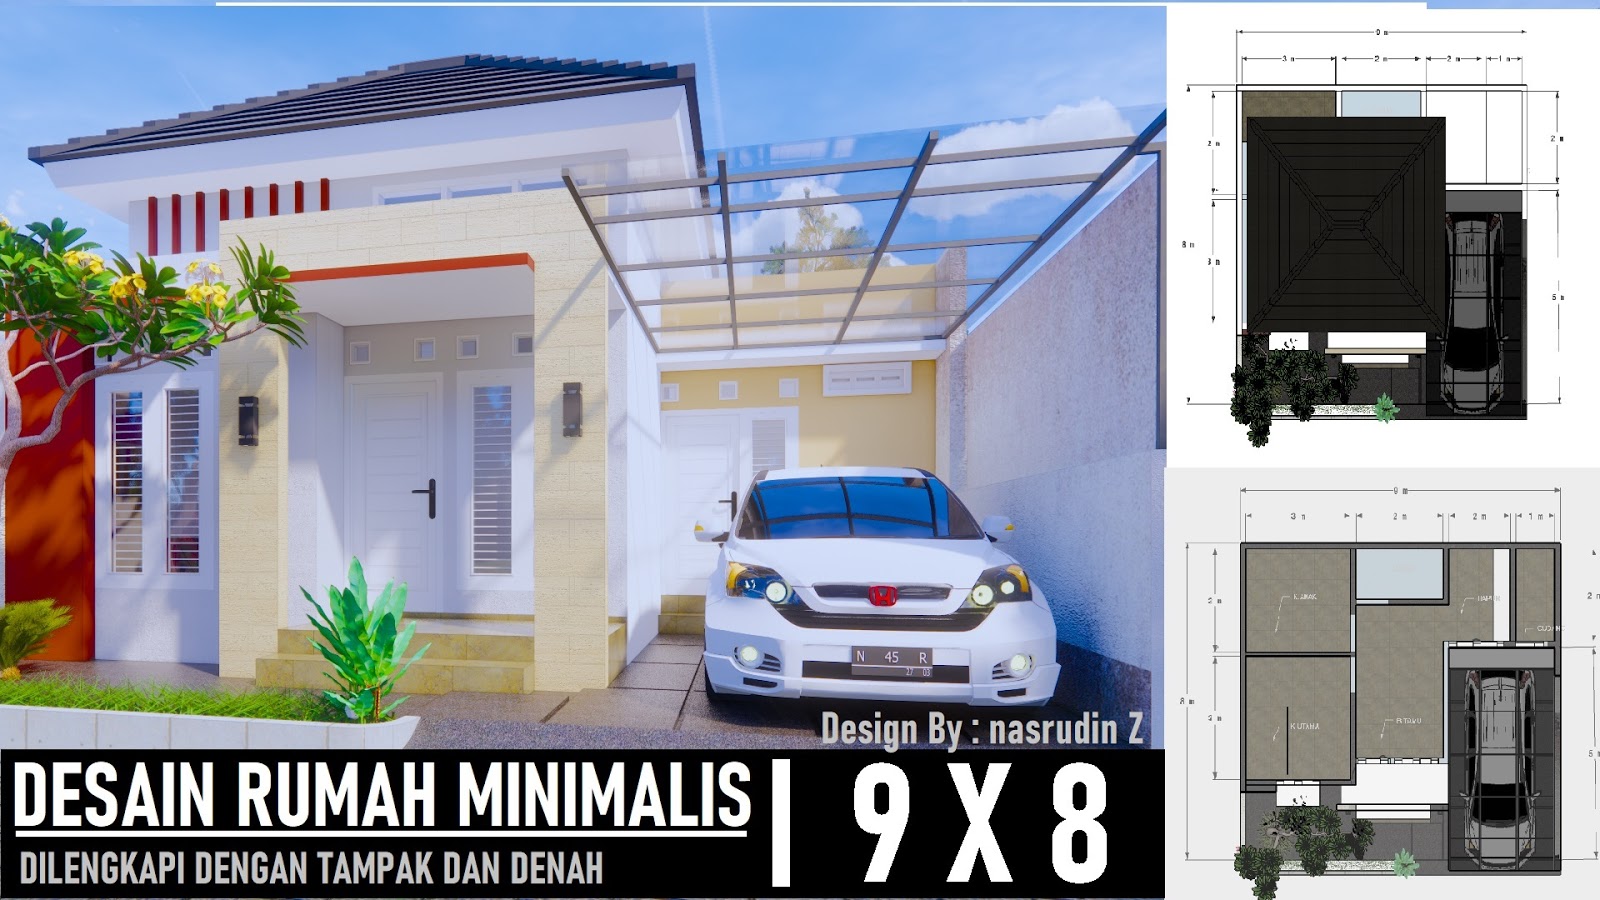 Desain Rumah Minimalis 8x9 Dilengkapi Denah Dan Tampak Desain